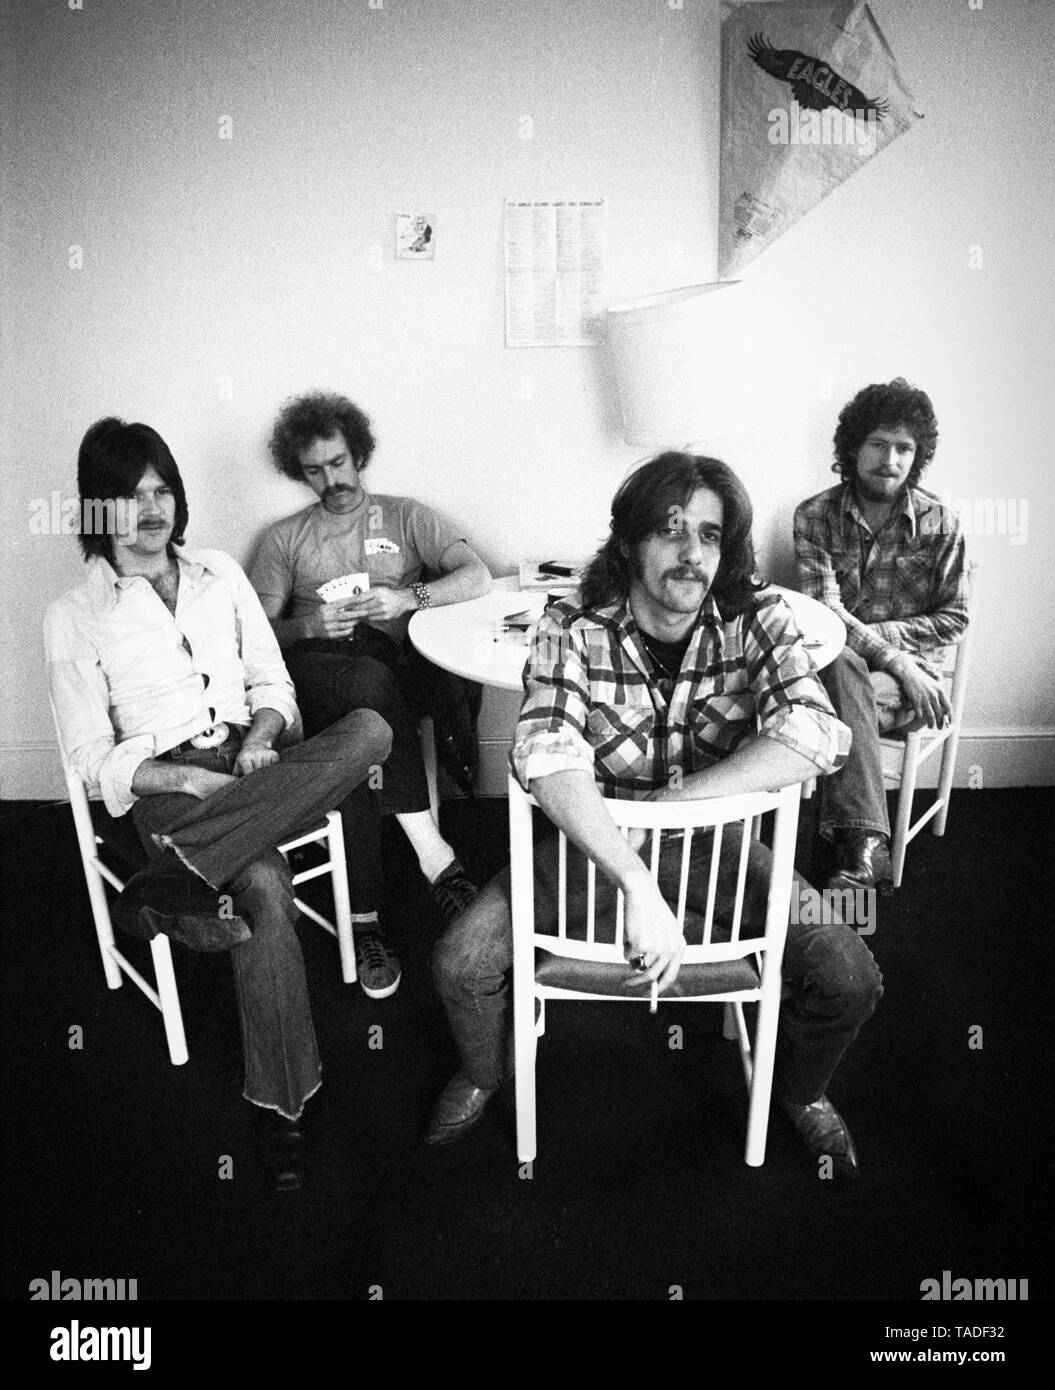 Randy Meisner, Bernie Leadon, Glenn Frey und Don Henley der Eagles posieren für ein Gruppenfoto in London 1973. (Foto Gijsbert Hanekroot) Stockfoto